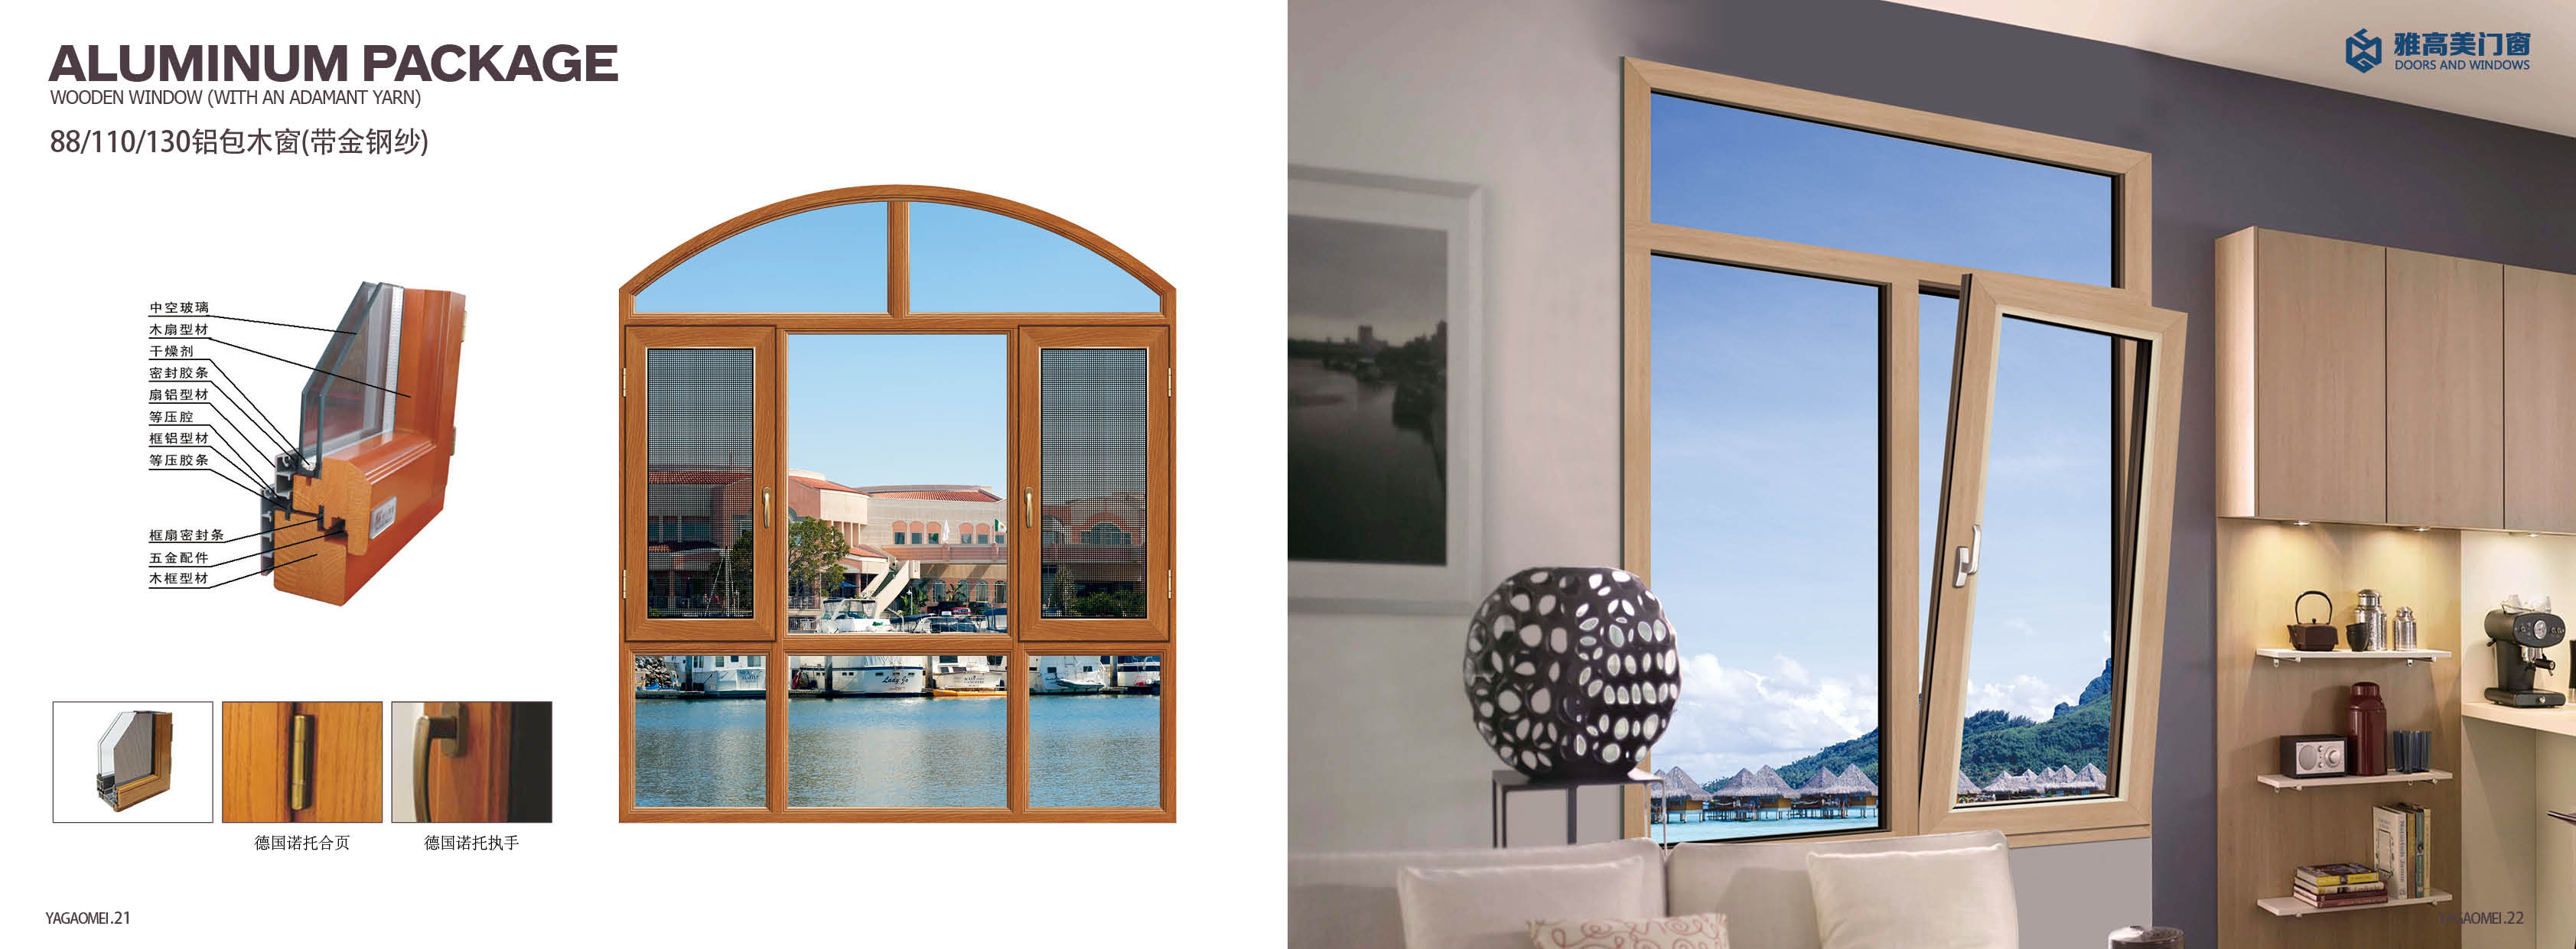 雅高门窗铝包木门窗、铝材为辅木材为主、节能环保隔音隔热AAG亚铝图片